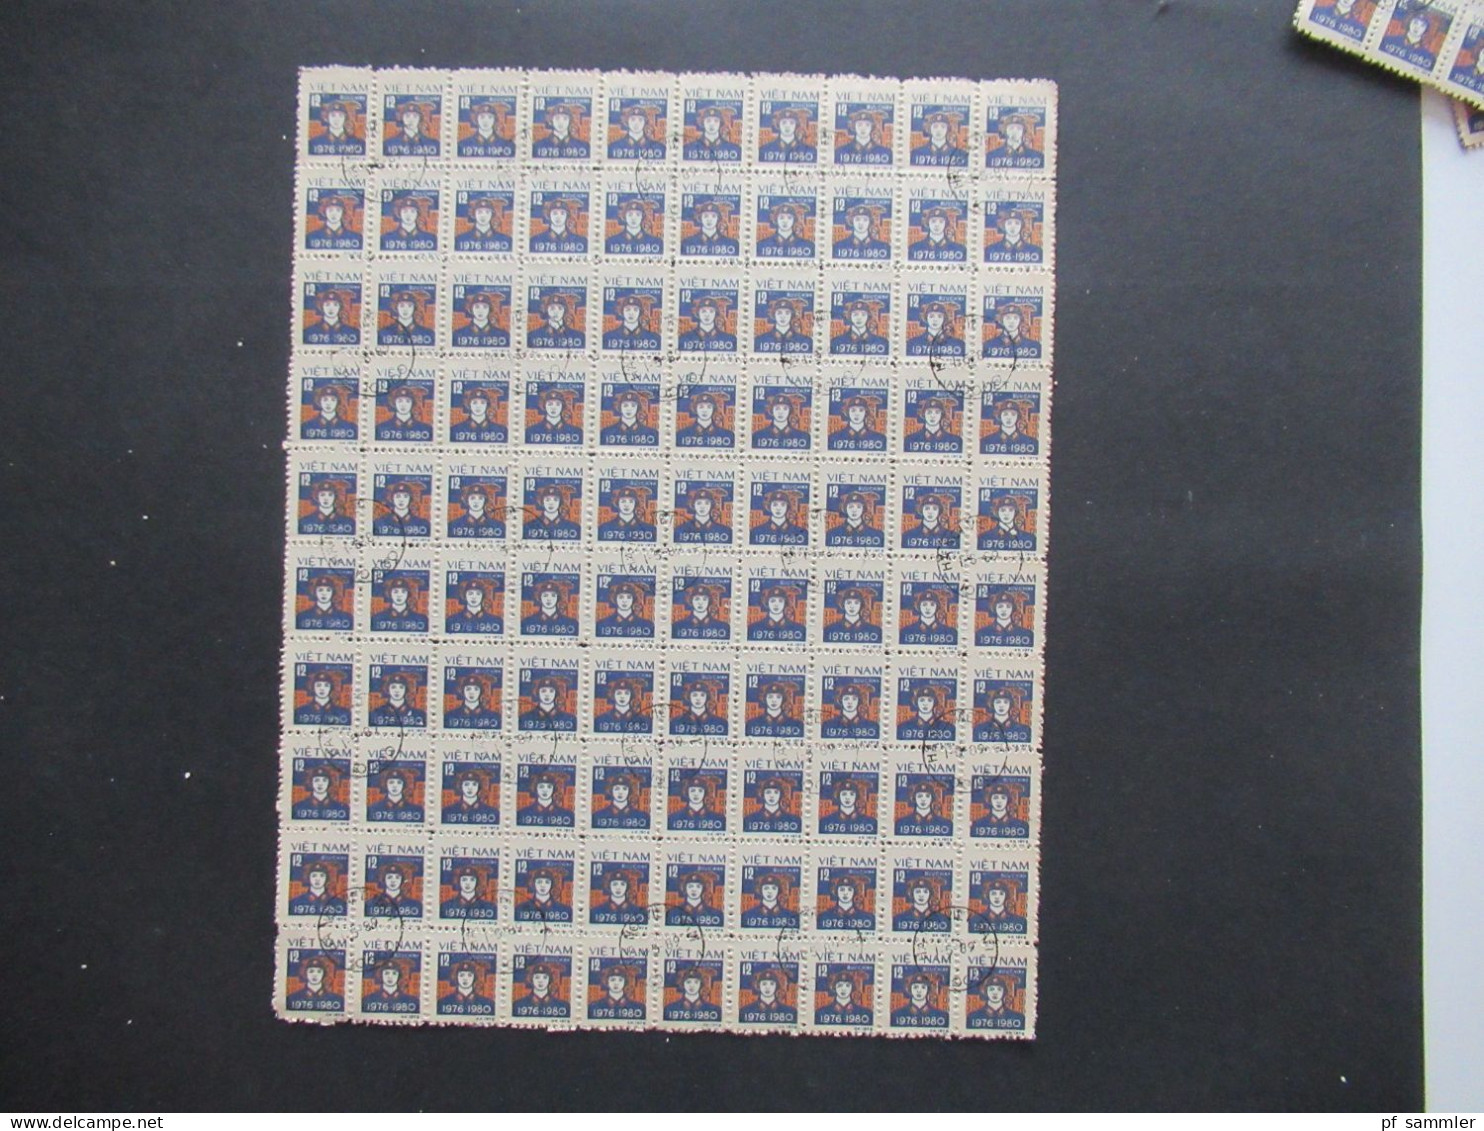 Asien Vietnam 1978 / 1980 Freimarken Motiv Soldat Buu Chinh 100er Bogenteile / Bogen (11 Stück) mit Stempel Hanoi